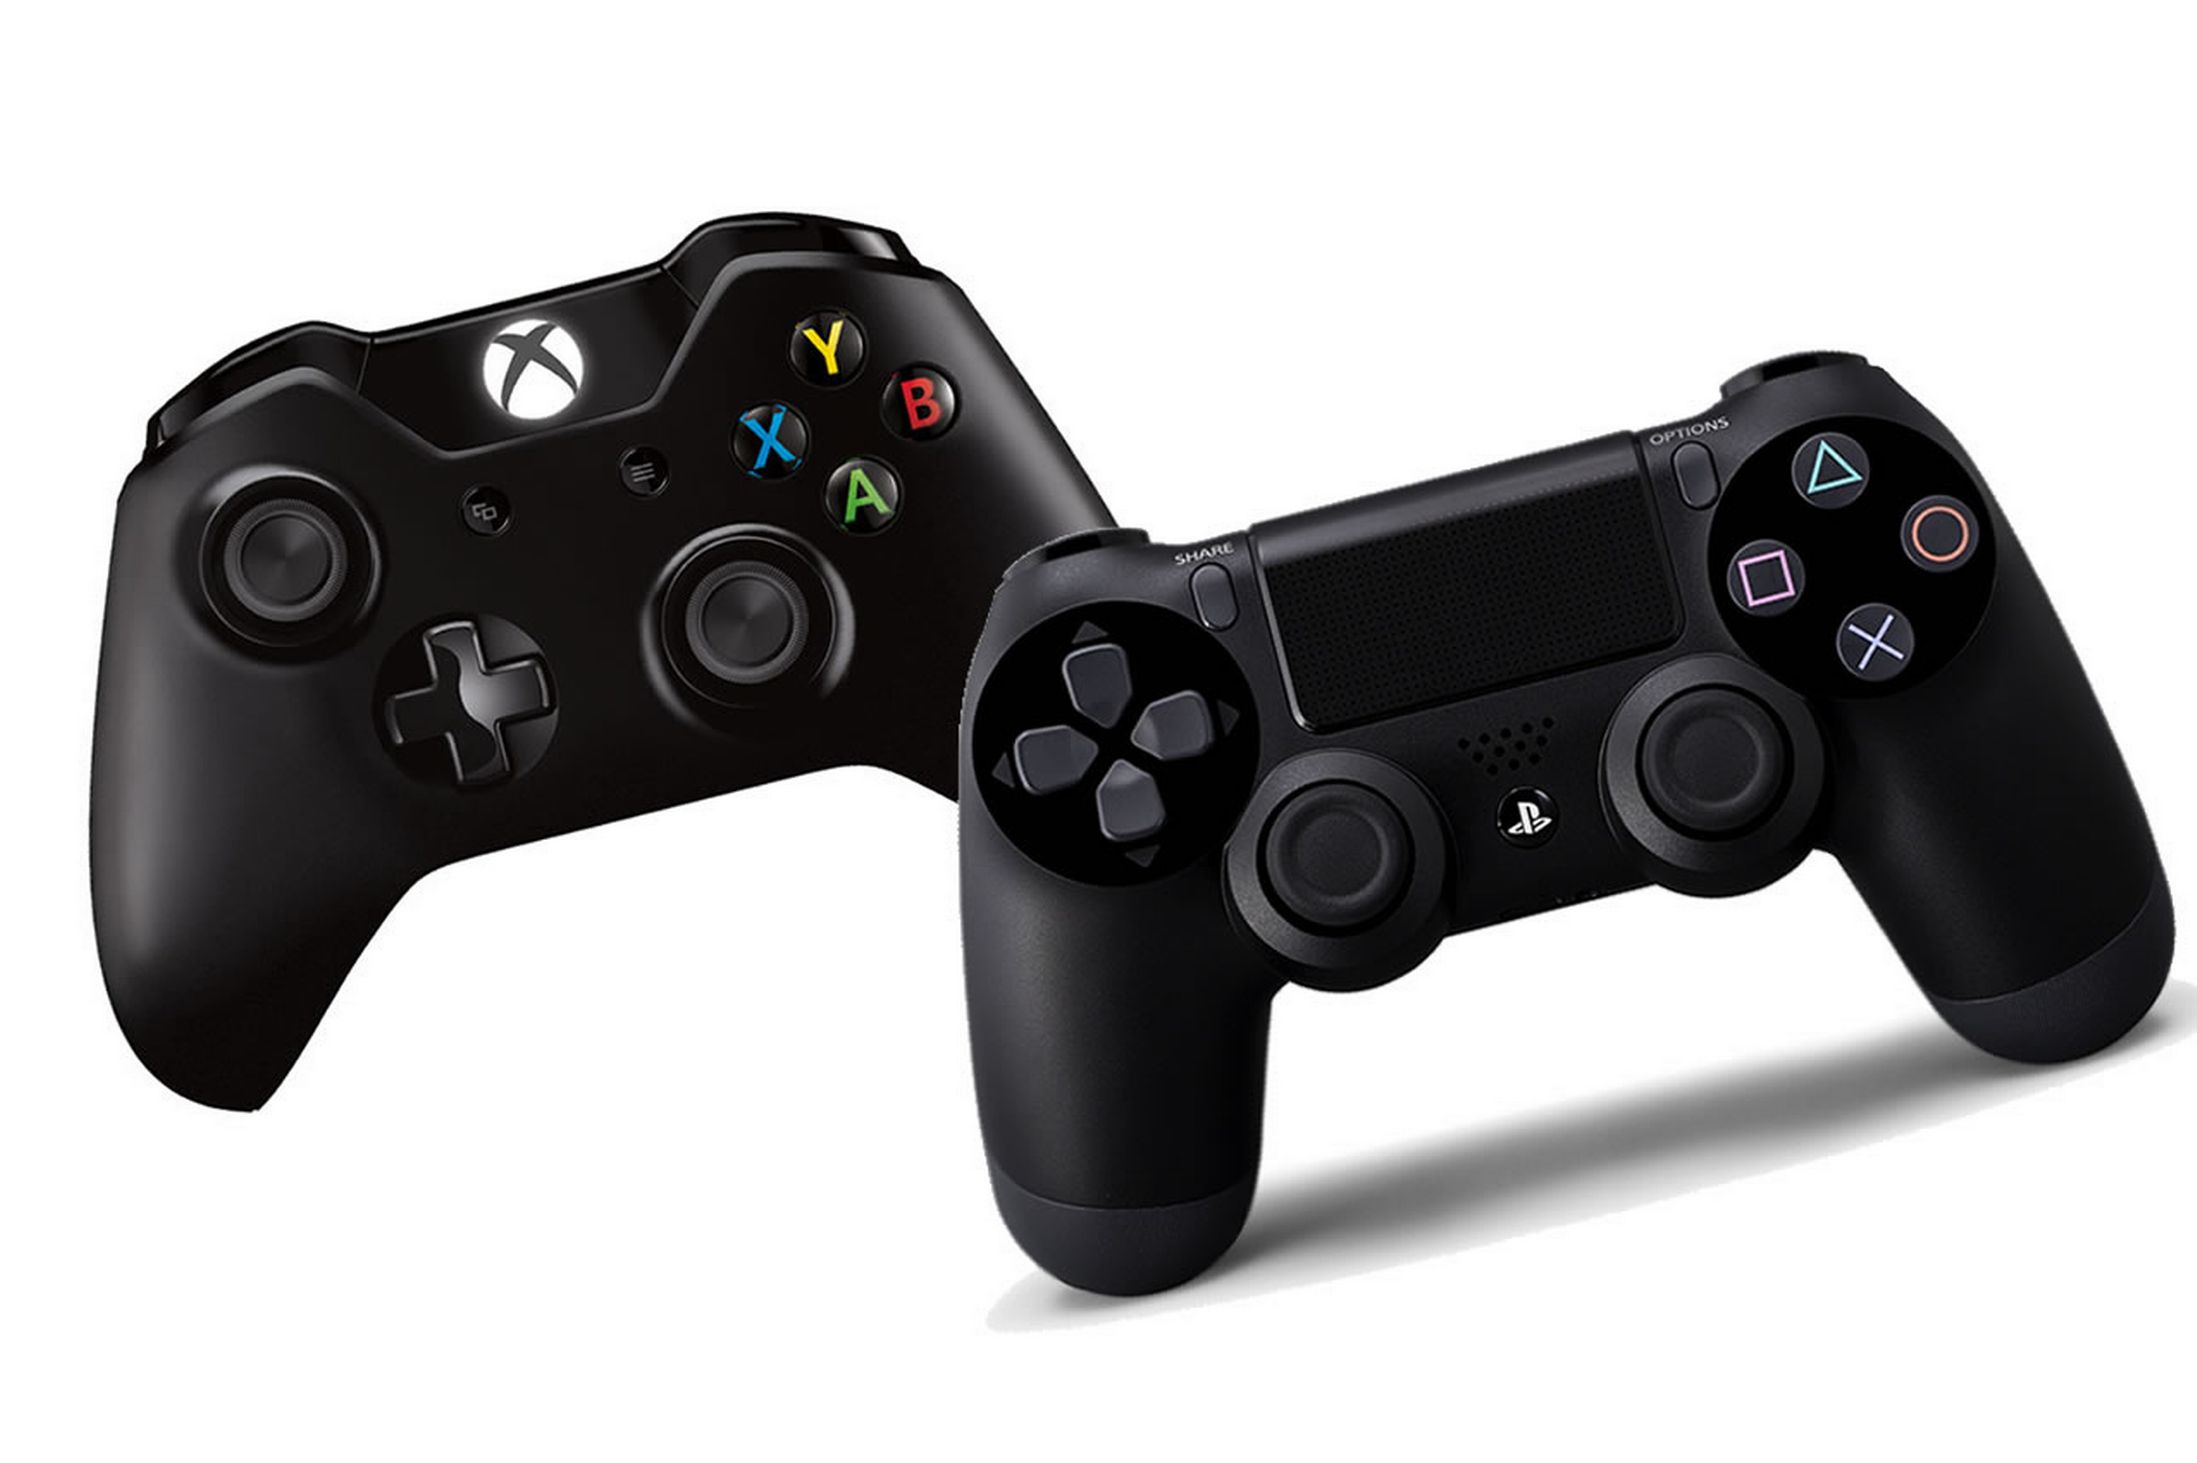 رو در رو : مقایسه ی کنترلرهای Xbox One و Playstation 4 | برتری با کدام است |گیم پور